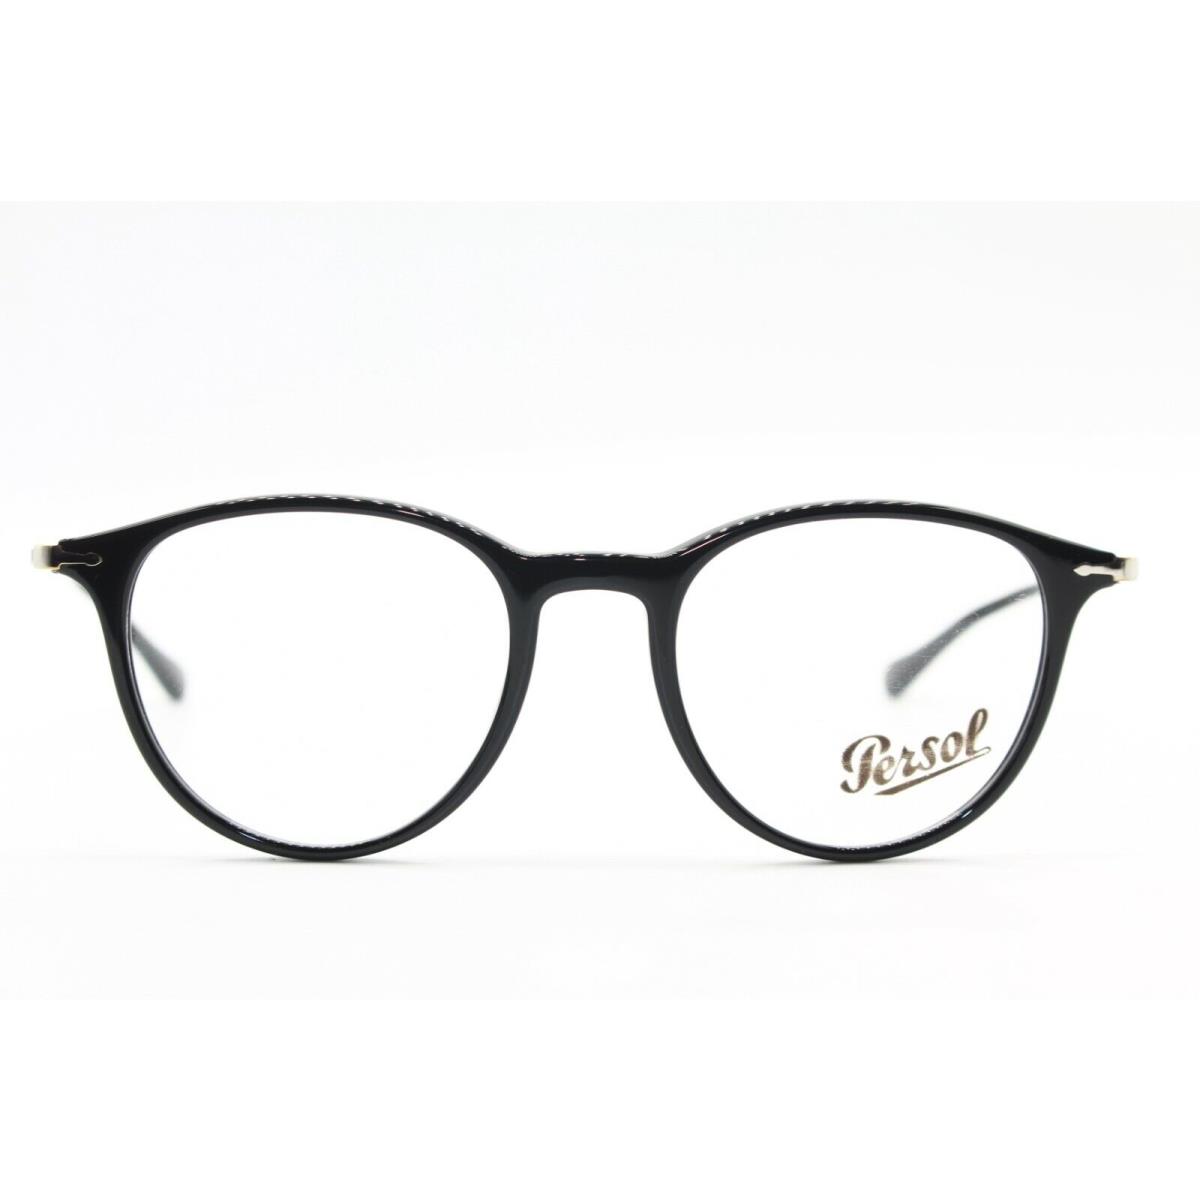 Persol eyeglasses  - BLACK Frame